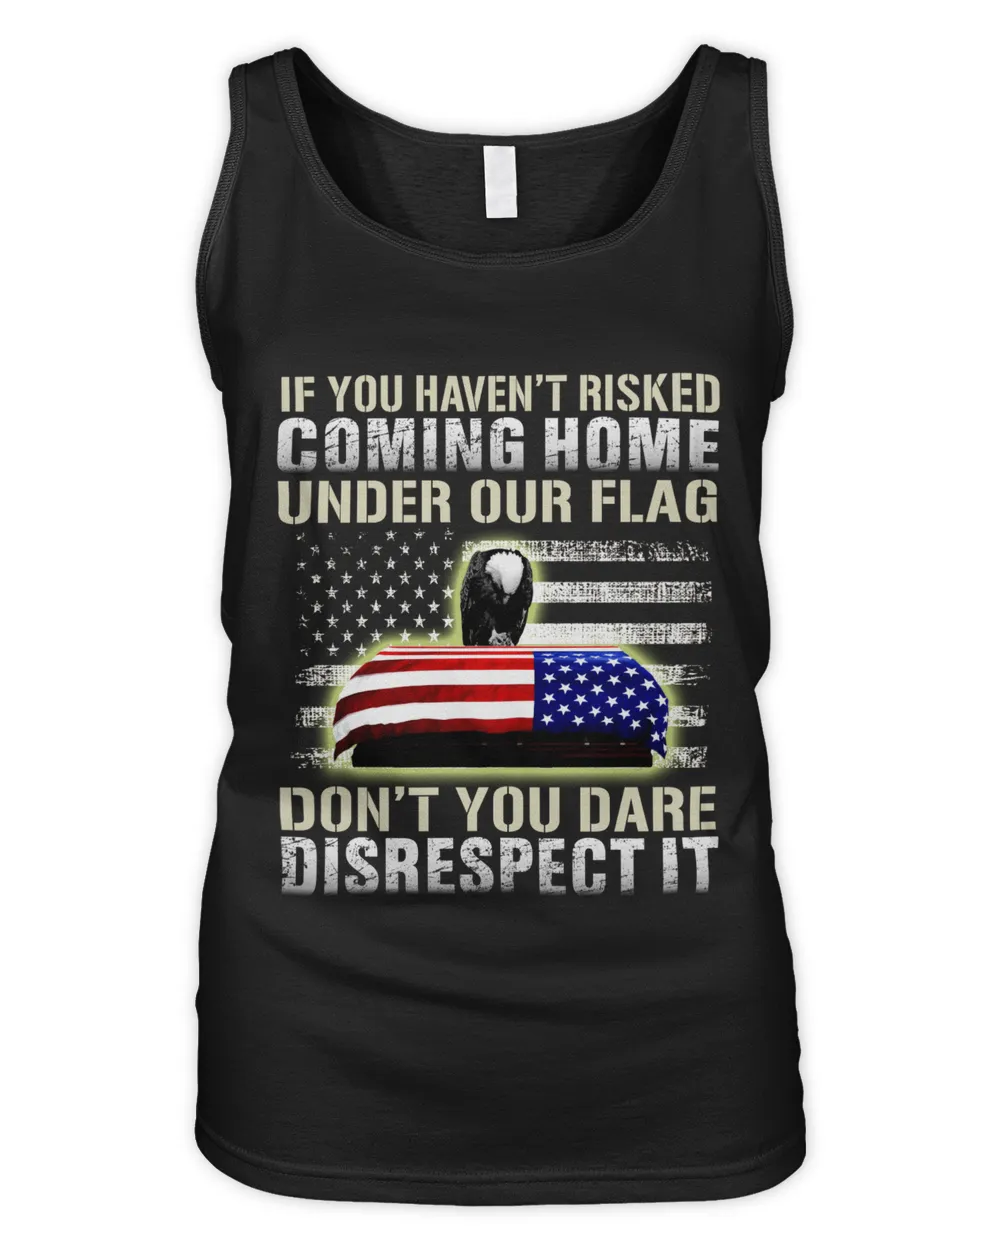 Don't You Dare Disrespect It, U.S Veterans